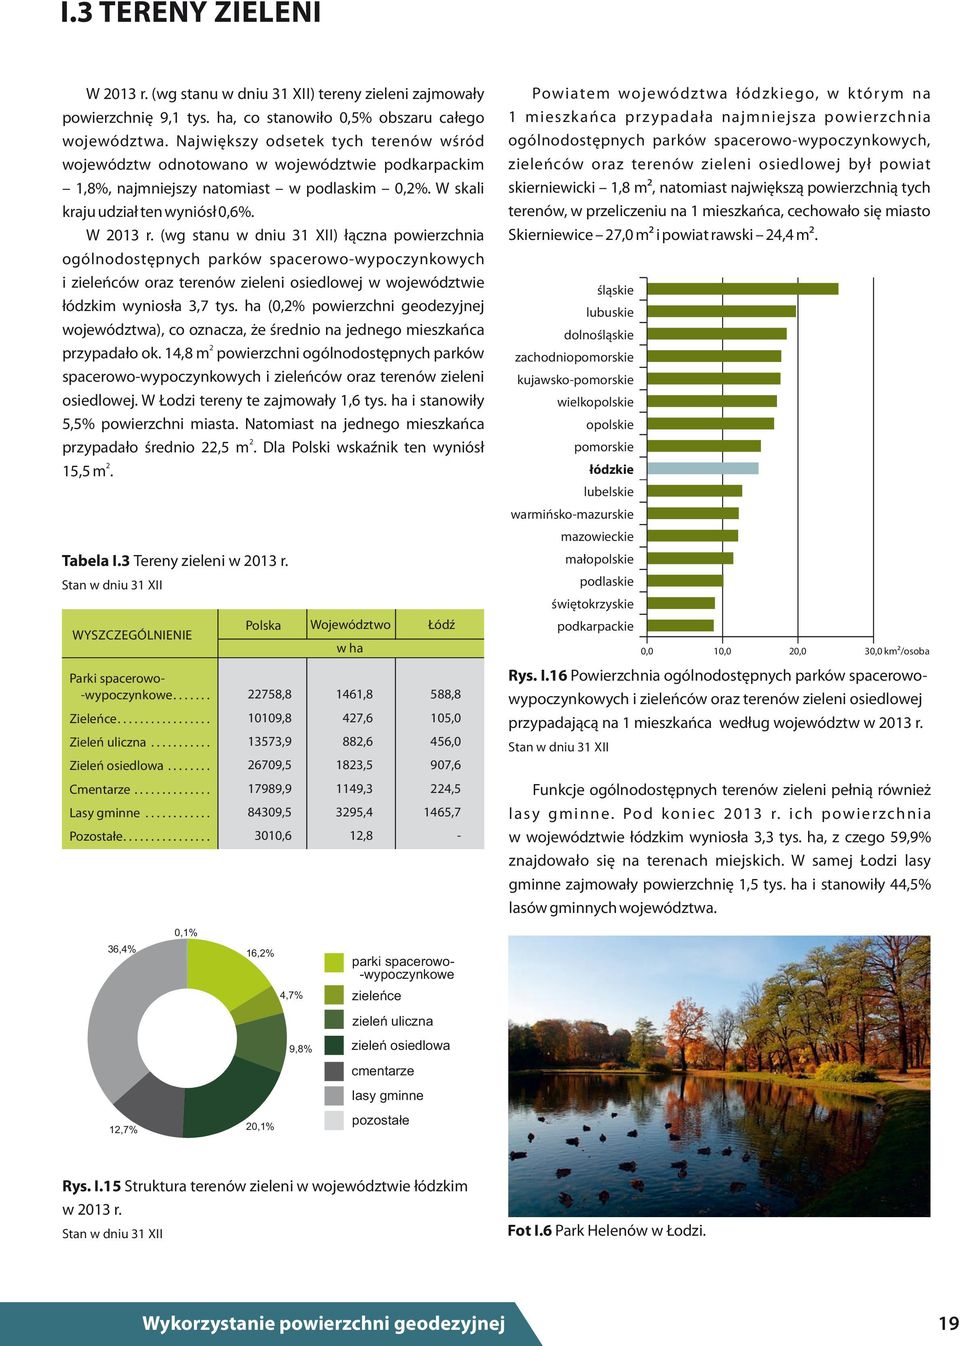 W 2013 r. (wg stanu w dniu 31 XII) łączna powierzchnia ogólnodostępnych parków spacerowo-wypoczynkowych i zieleńców oraz terenów zieleni osiedlowej w województwie łódzkim wyniosła 3,7 tys.